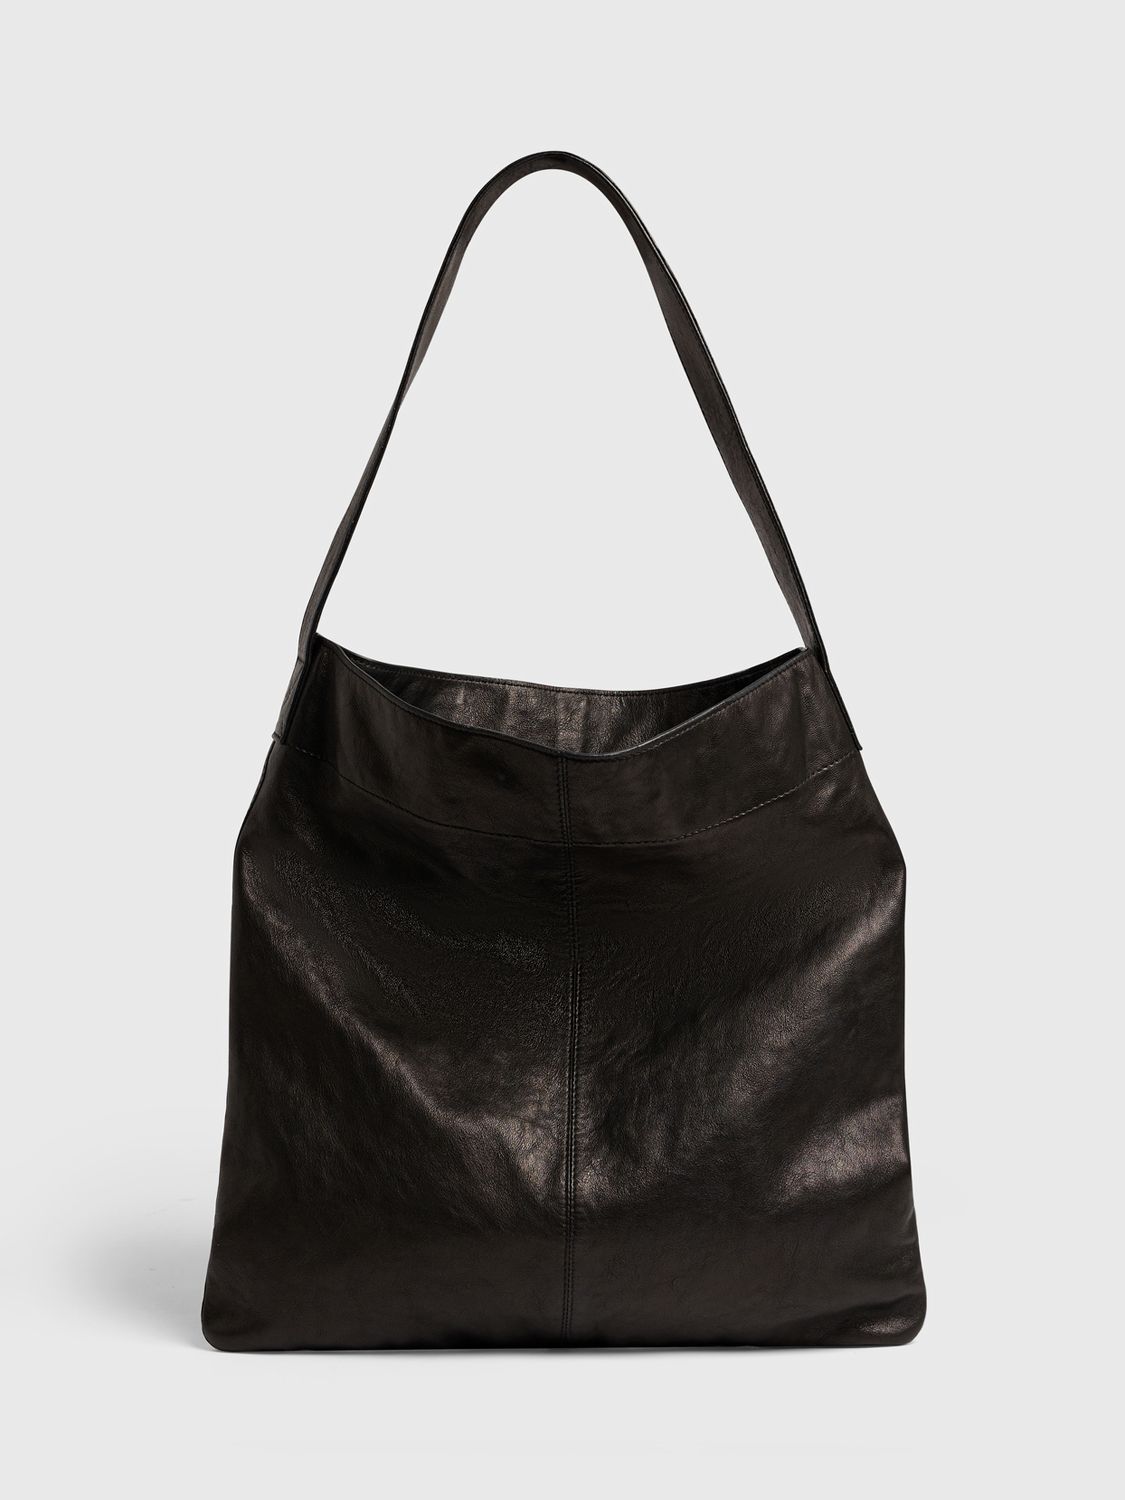 Gerard Darel Lady Handbag, Black at John Lewis & Partners